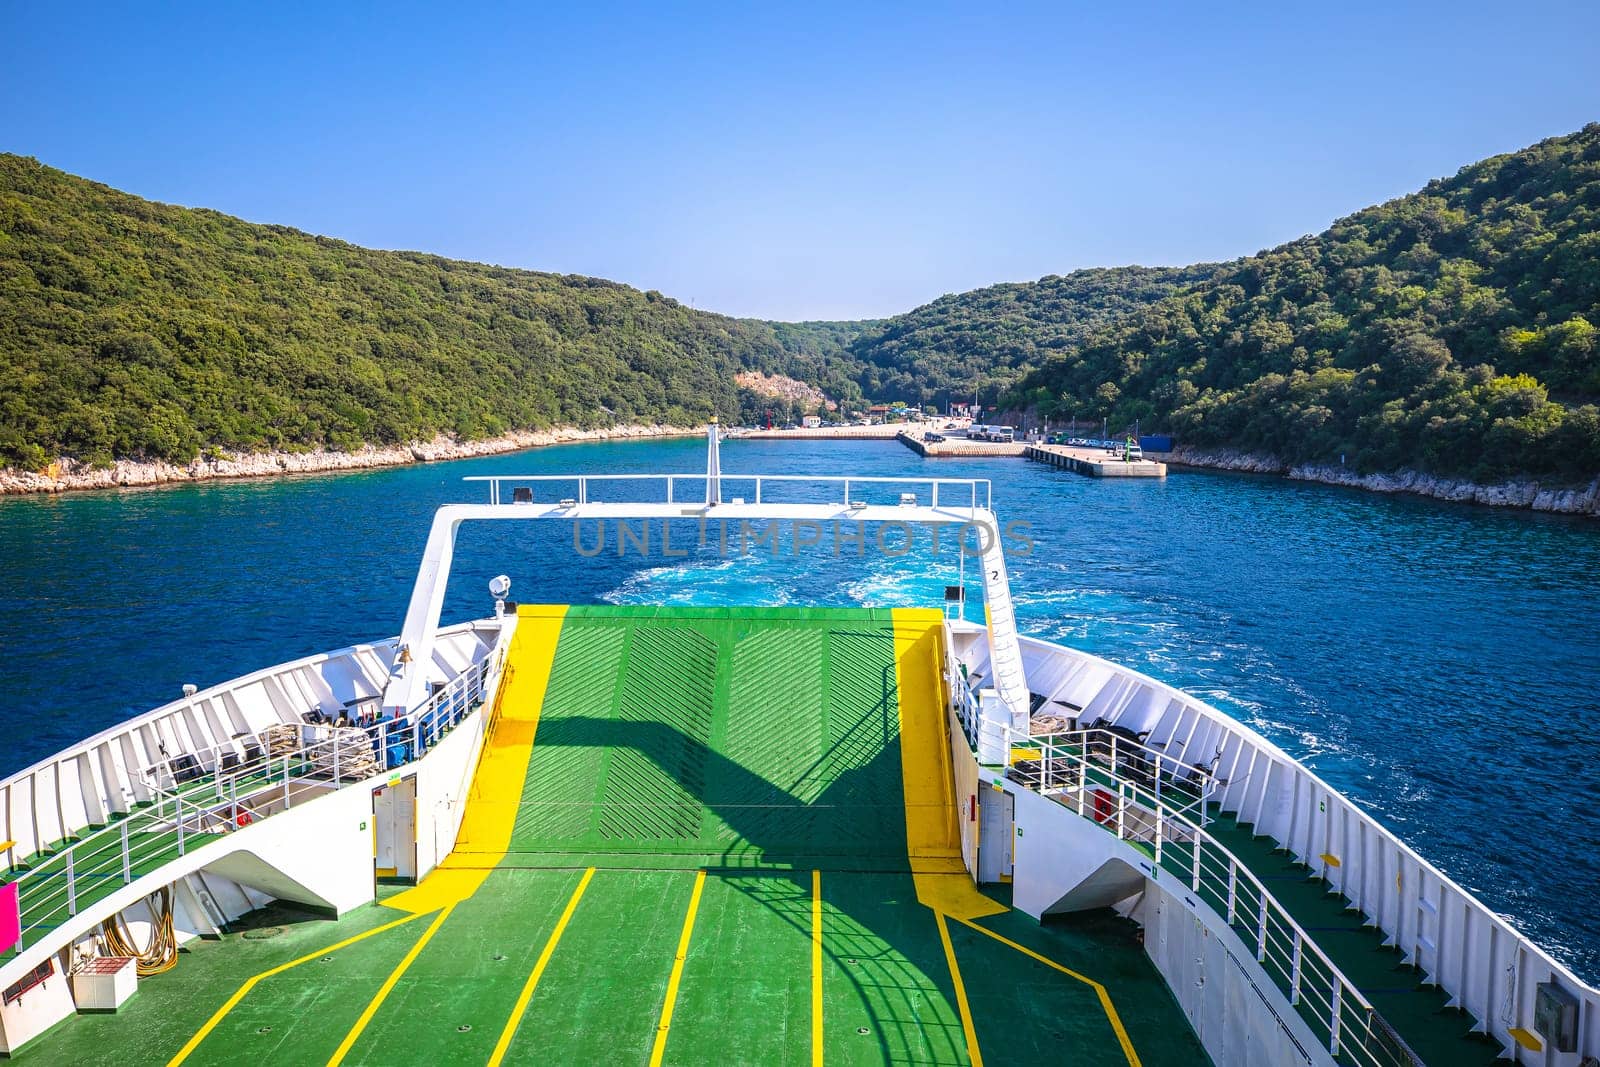 Adriatic ferry boat deck view, public sea transportation by xbrchx